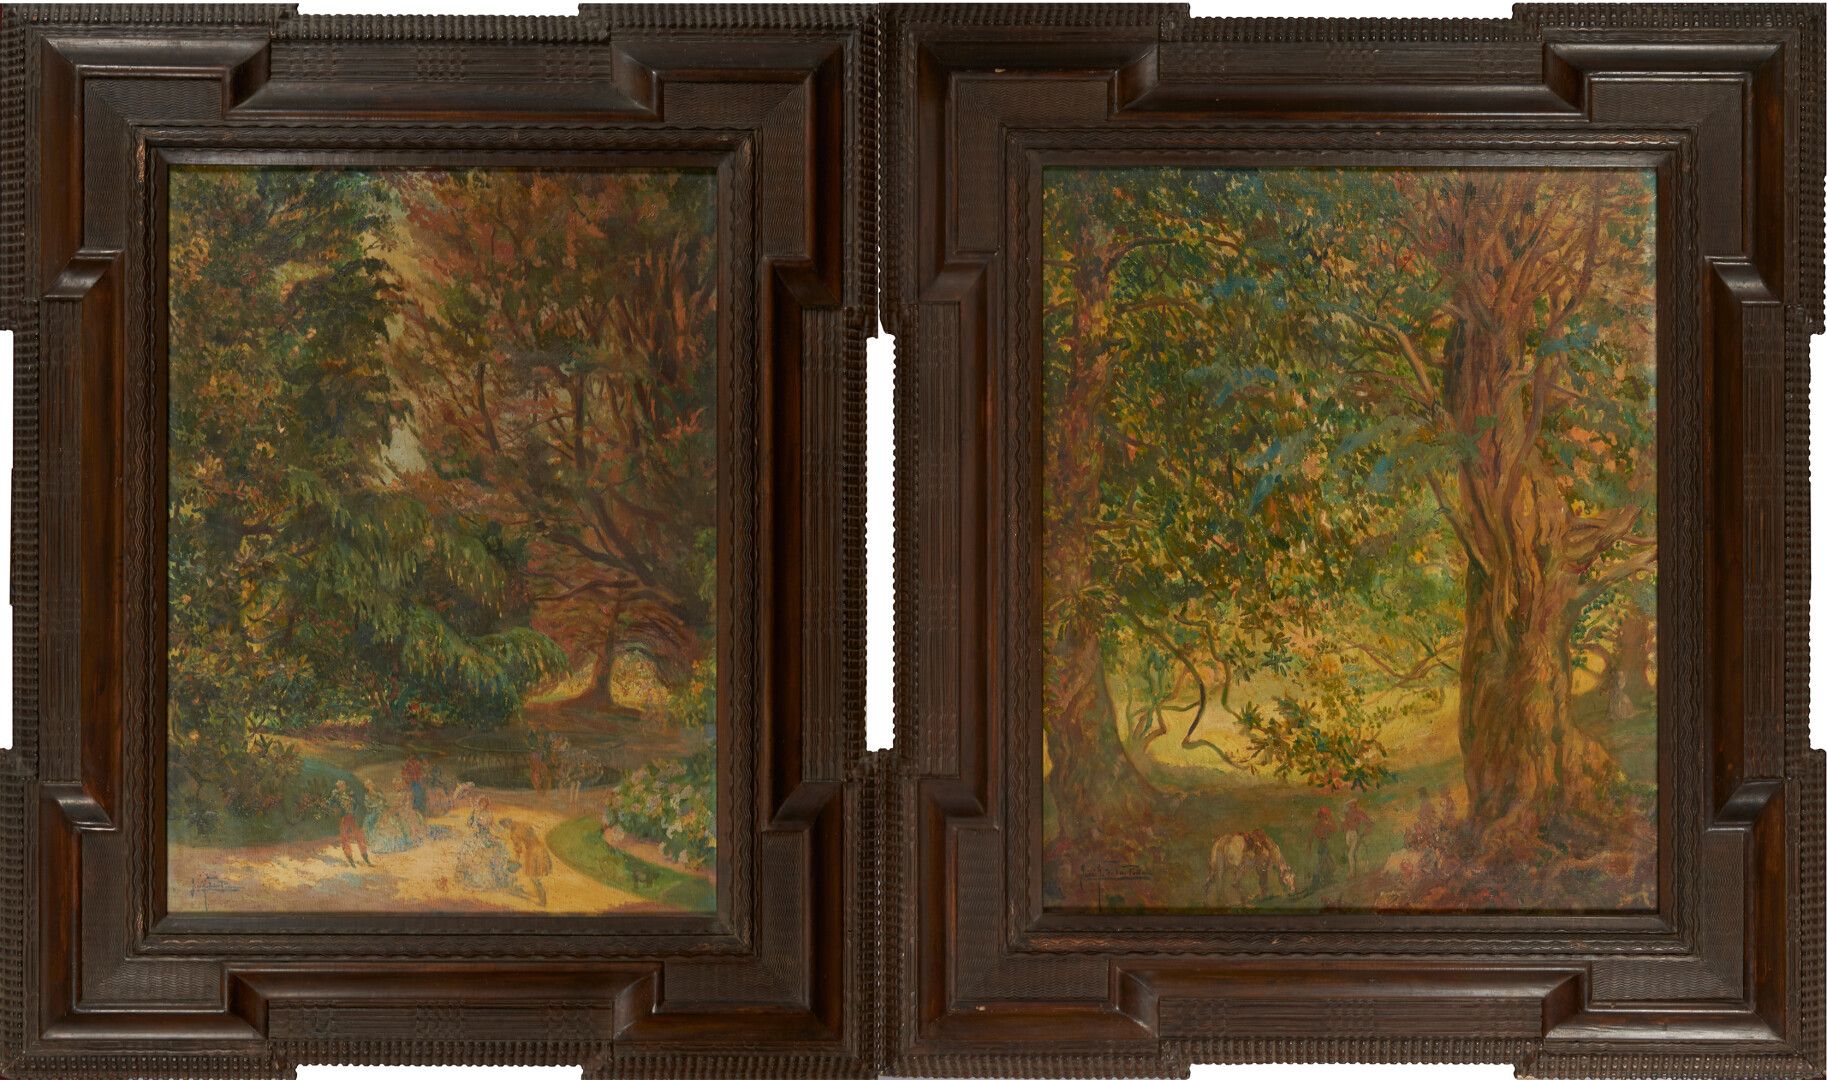 Null de la PEÑA José 1887-1961)

"Reception in a park" two oil on canvas signed &hellip;